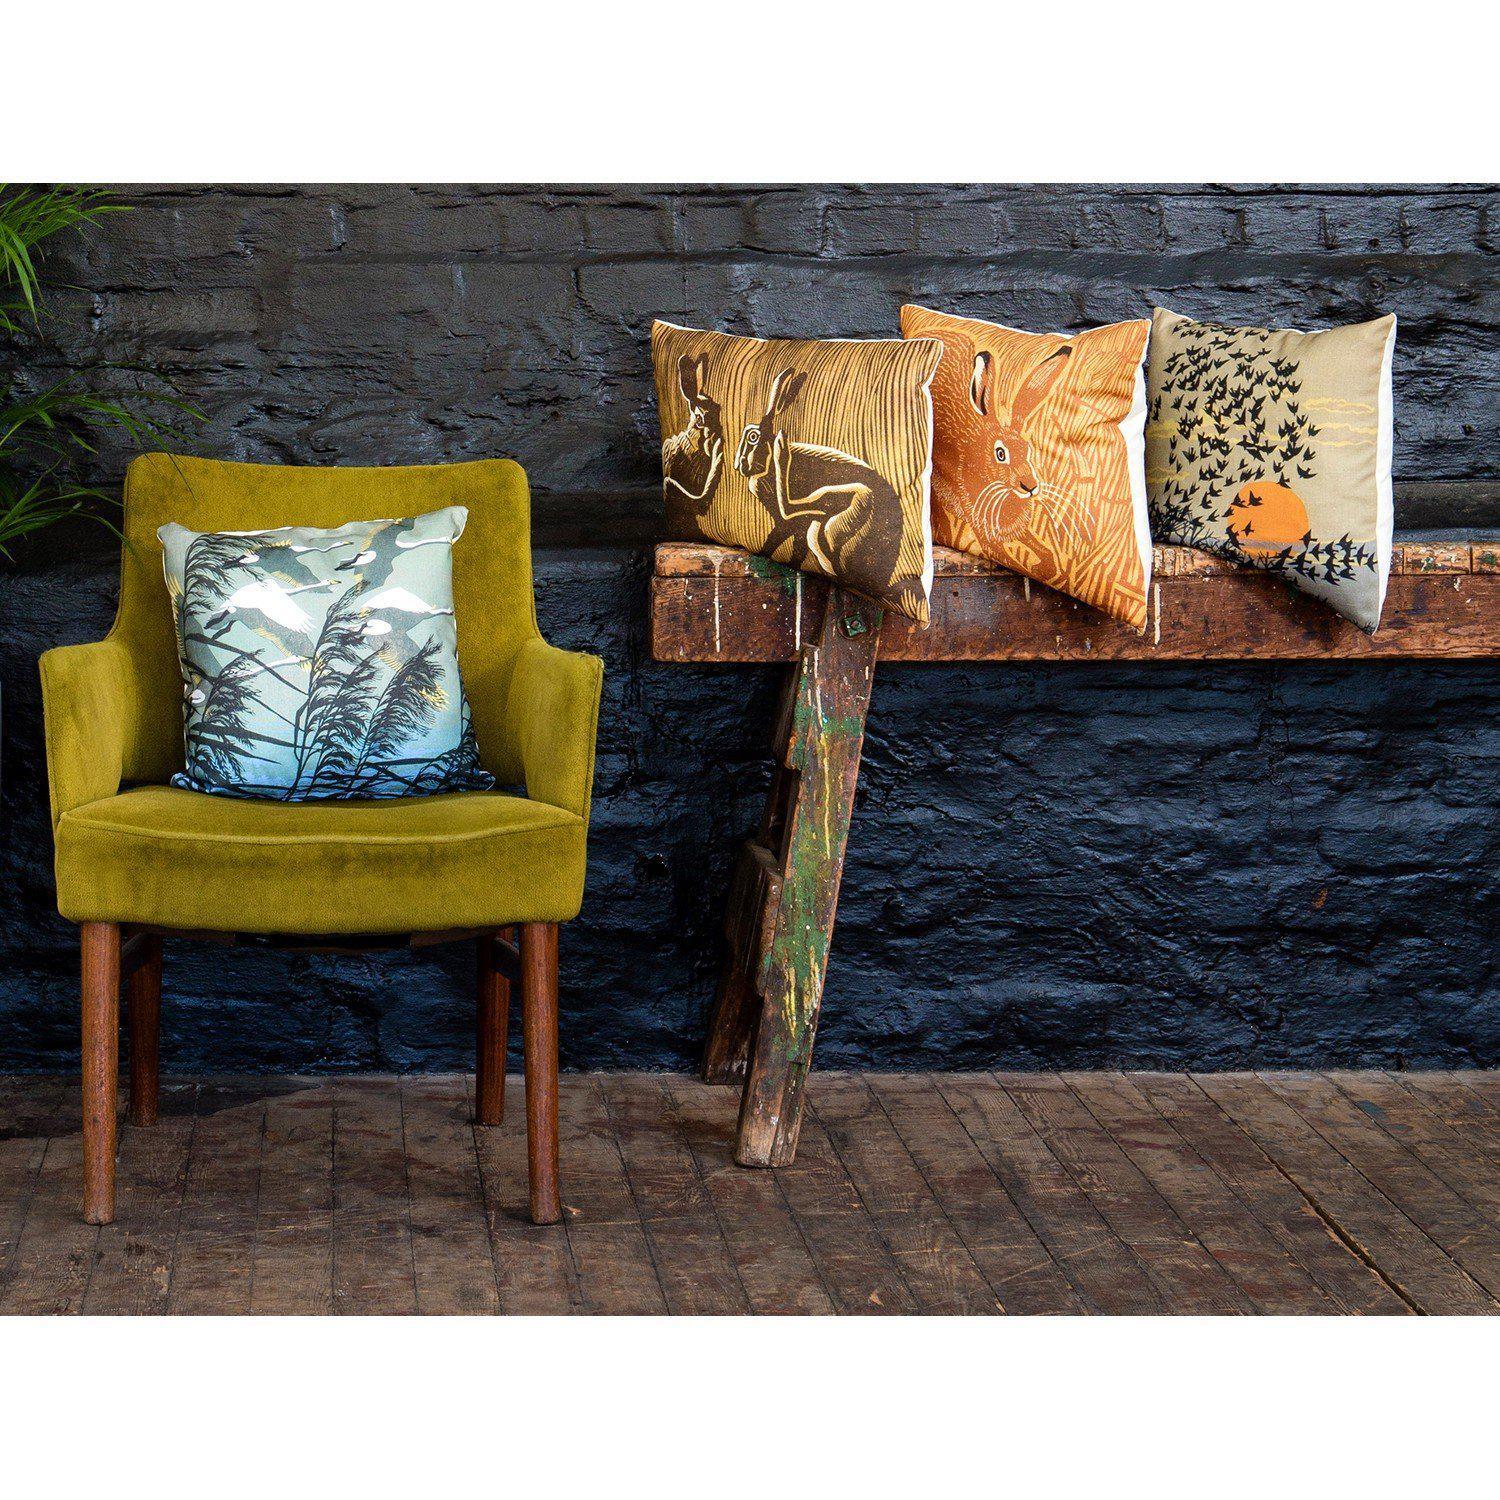 Thrilling Wonder Stories - Rift of infinity - Mary Evans Cushion - Handmade Cushions UK - WeLoveCushions